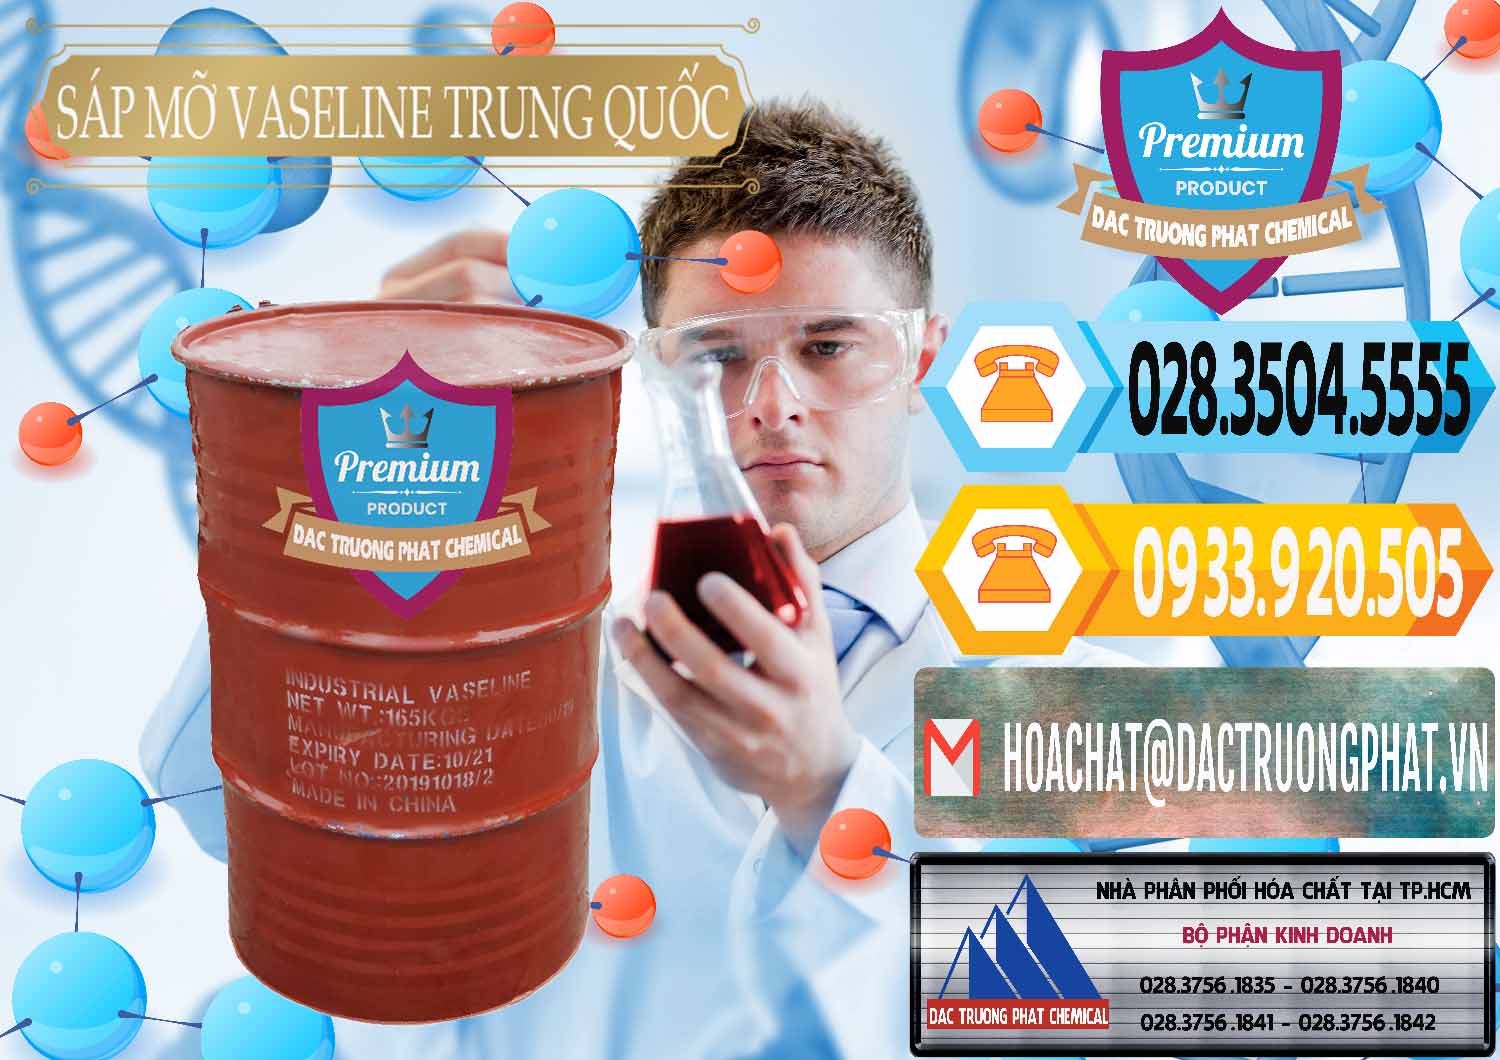 Cty cung cấp ( bán ) Sáp Mỡ Vaseline Trung Quốc China - 0122 - Nơi cung ứng _ phân phối hóa chất tại TP.HCM - hoachattayrua.net